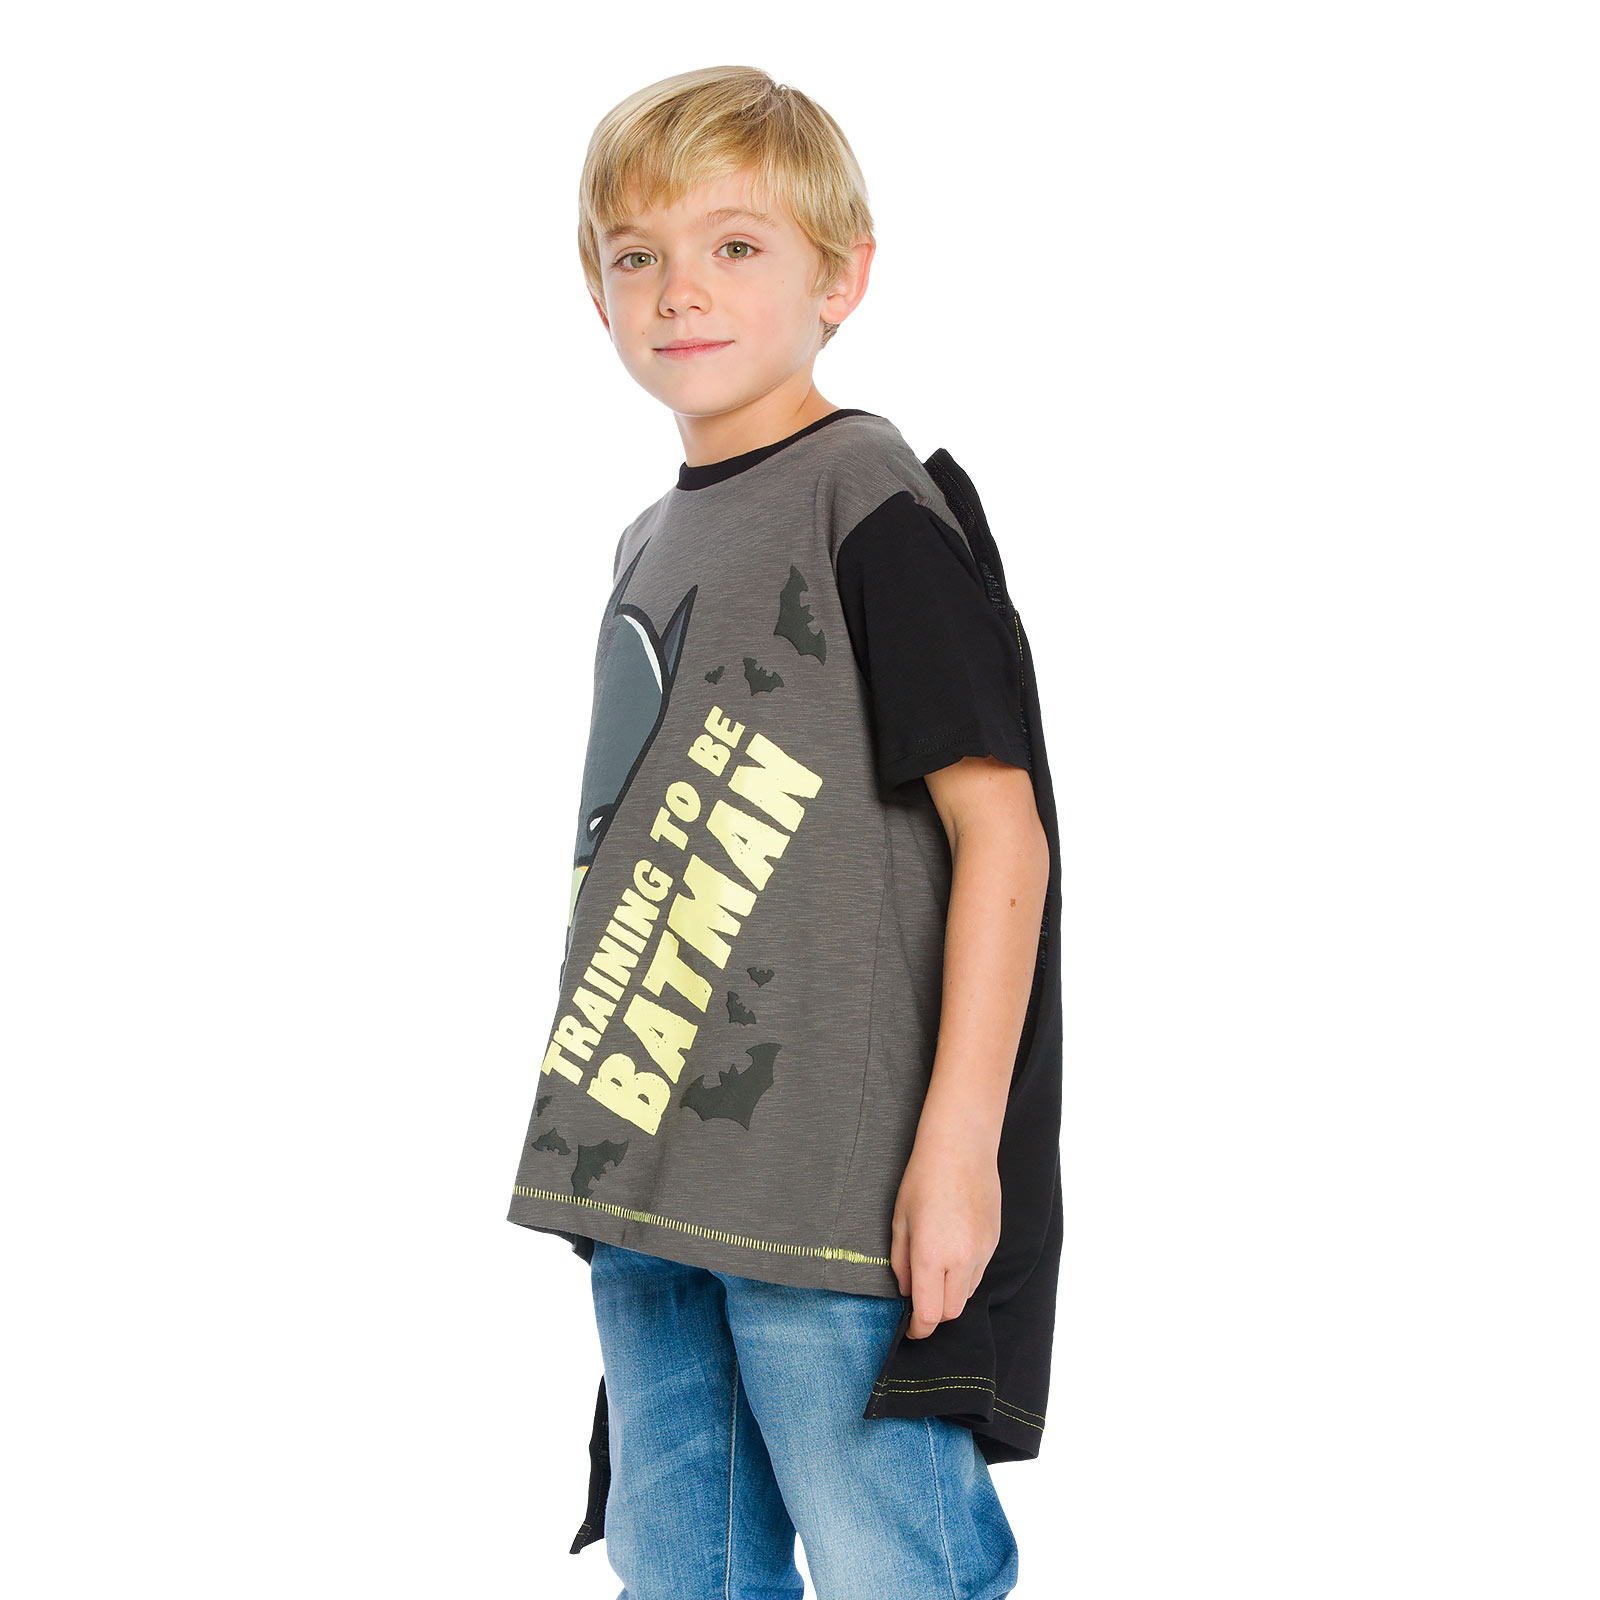 Batman - Children's T-Shirt with Cape black